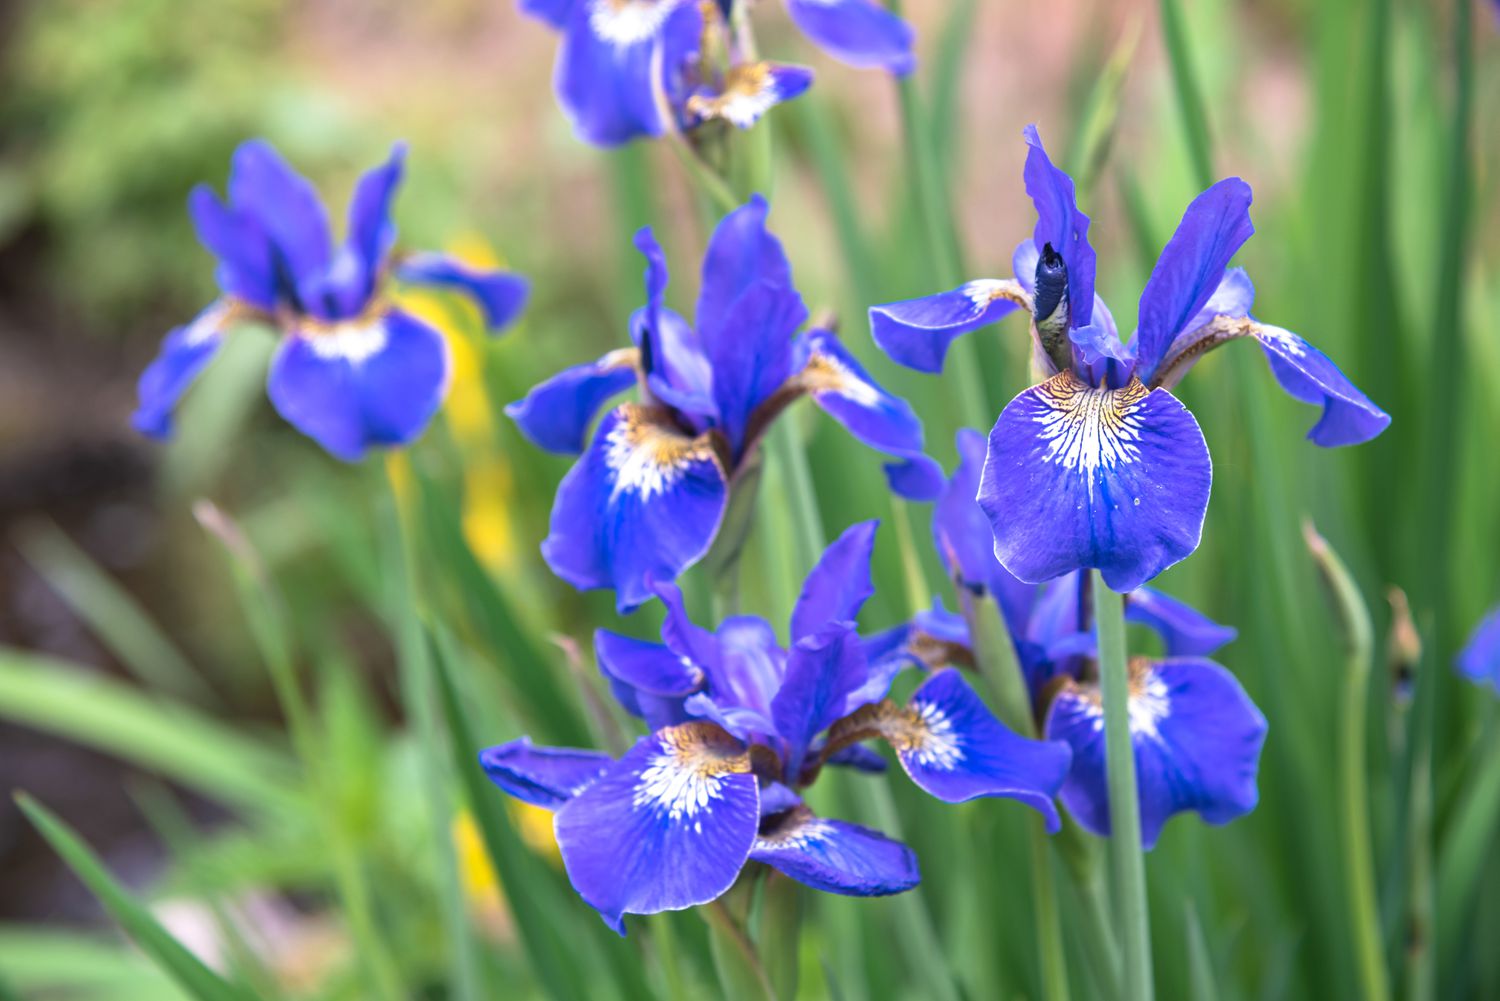 Planta de iris siberiano con flores de color azul púrpura con centros blancos y amarillos